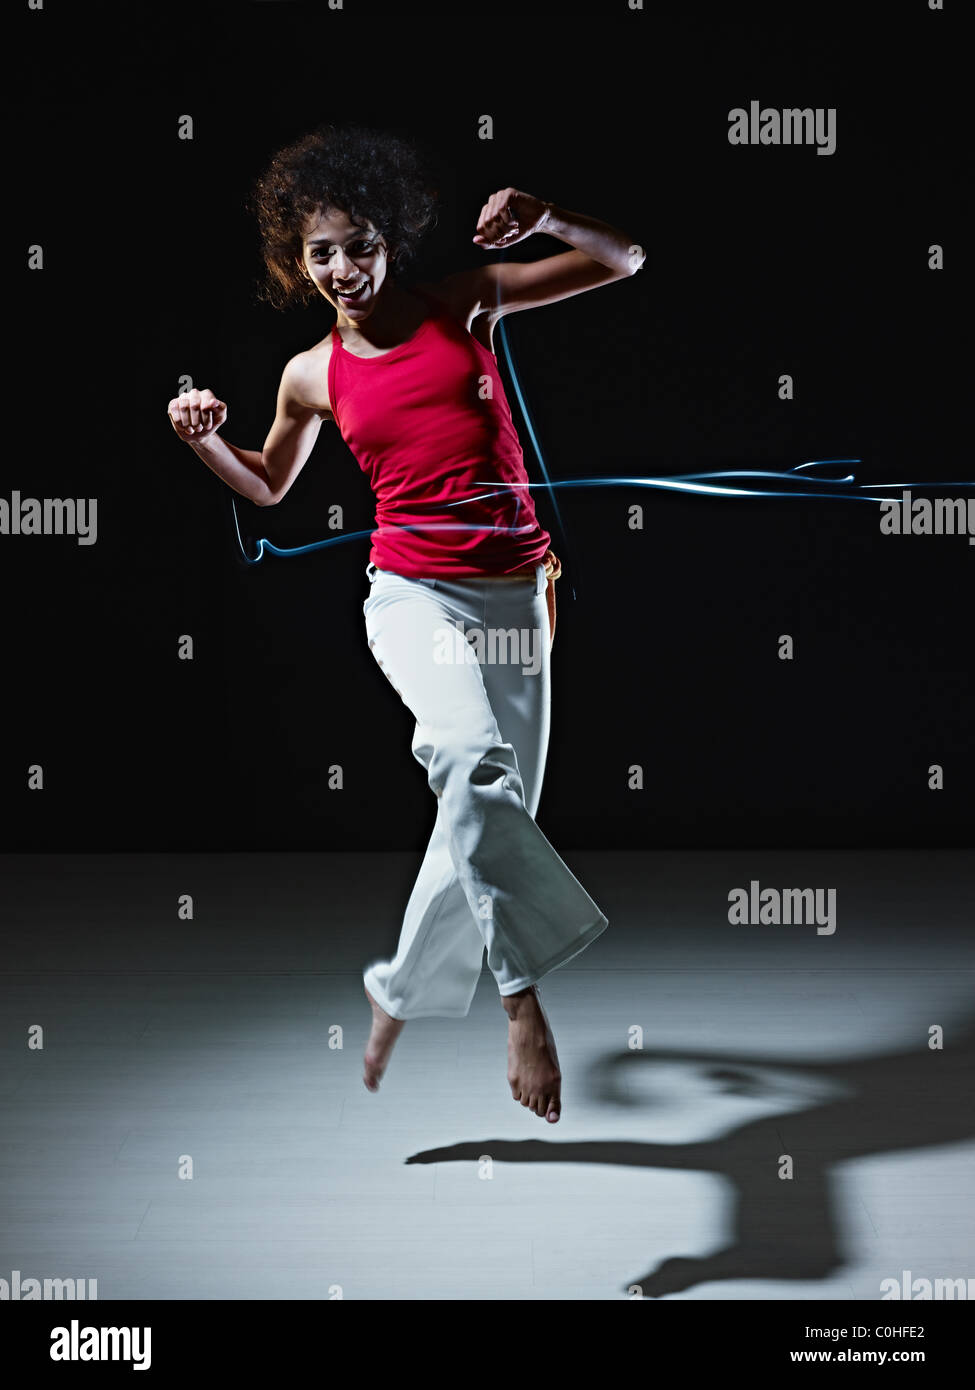 junge Erwachsene lateinamerikanische Frau springen und spielen mit led-leuchten Streifen auf schwarzem Hintergrund zu tun. Stockfoto